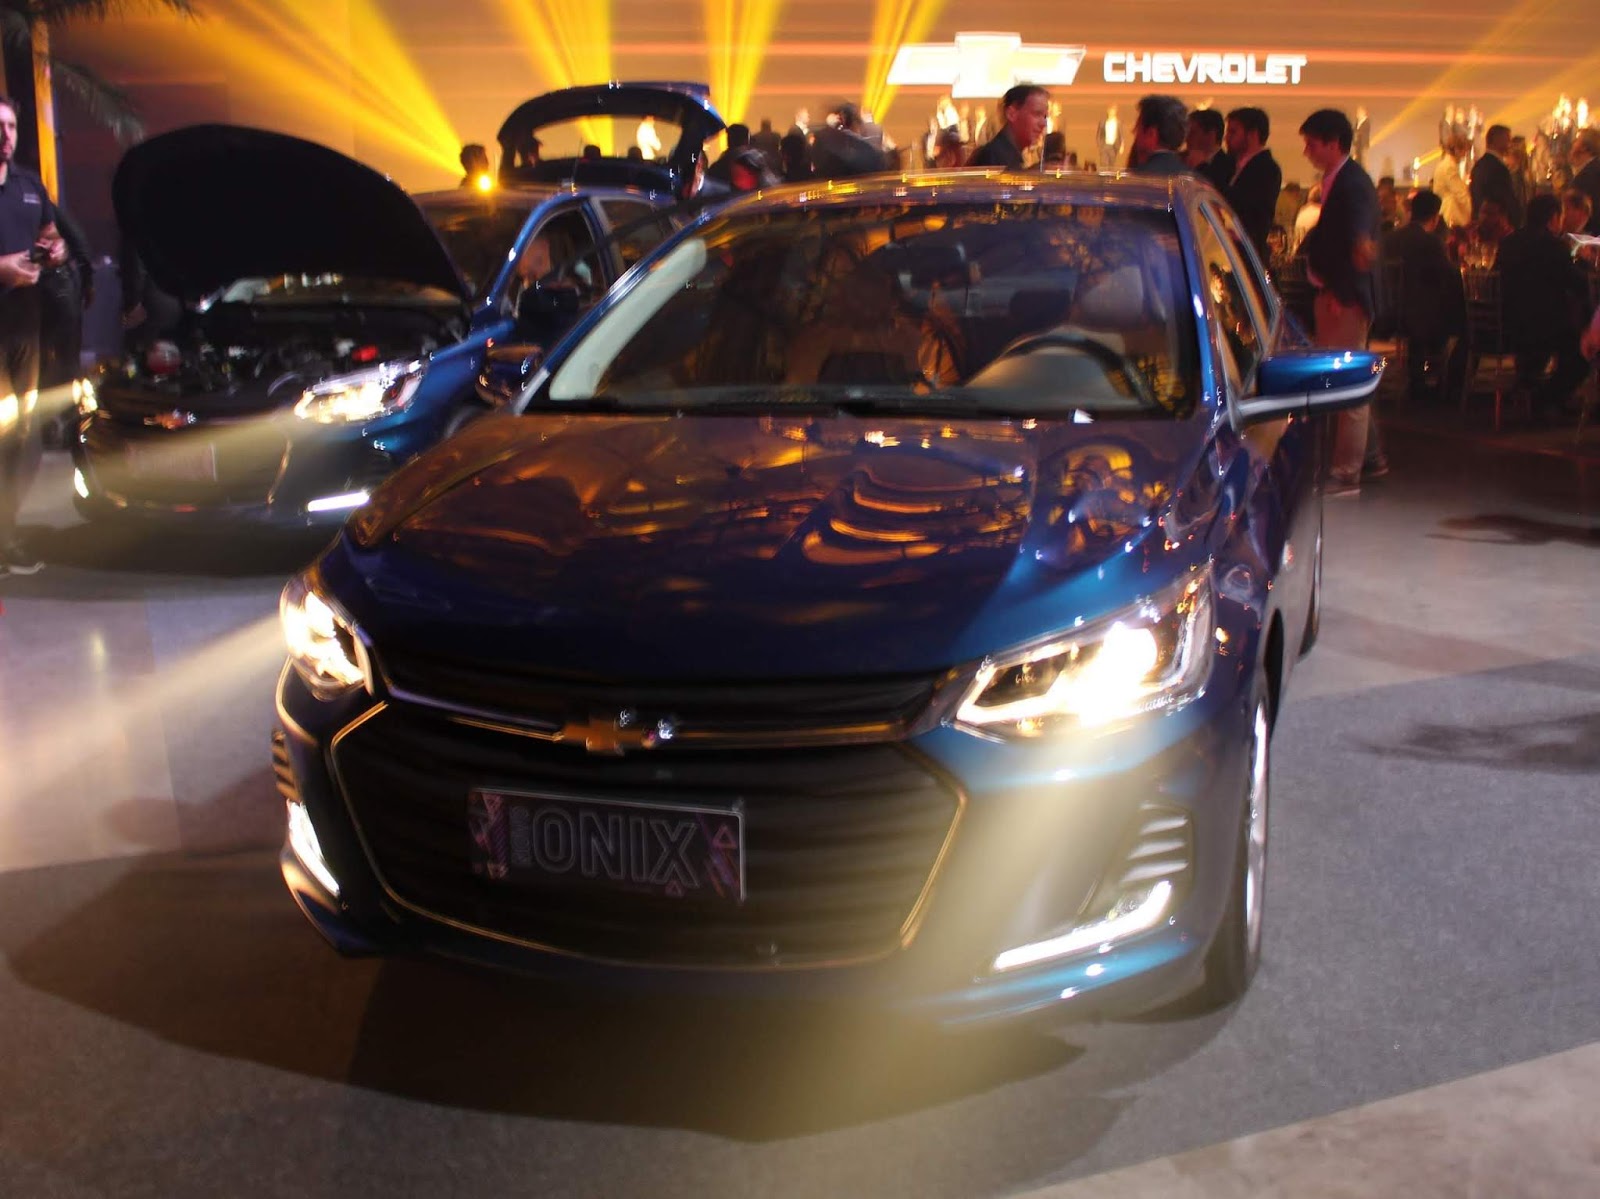 Longa Duração: central do Chevrolet Onix Plus ofusca o motorista à noite